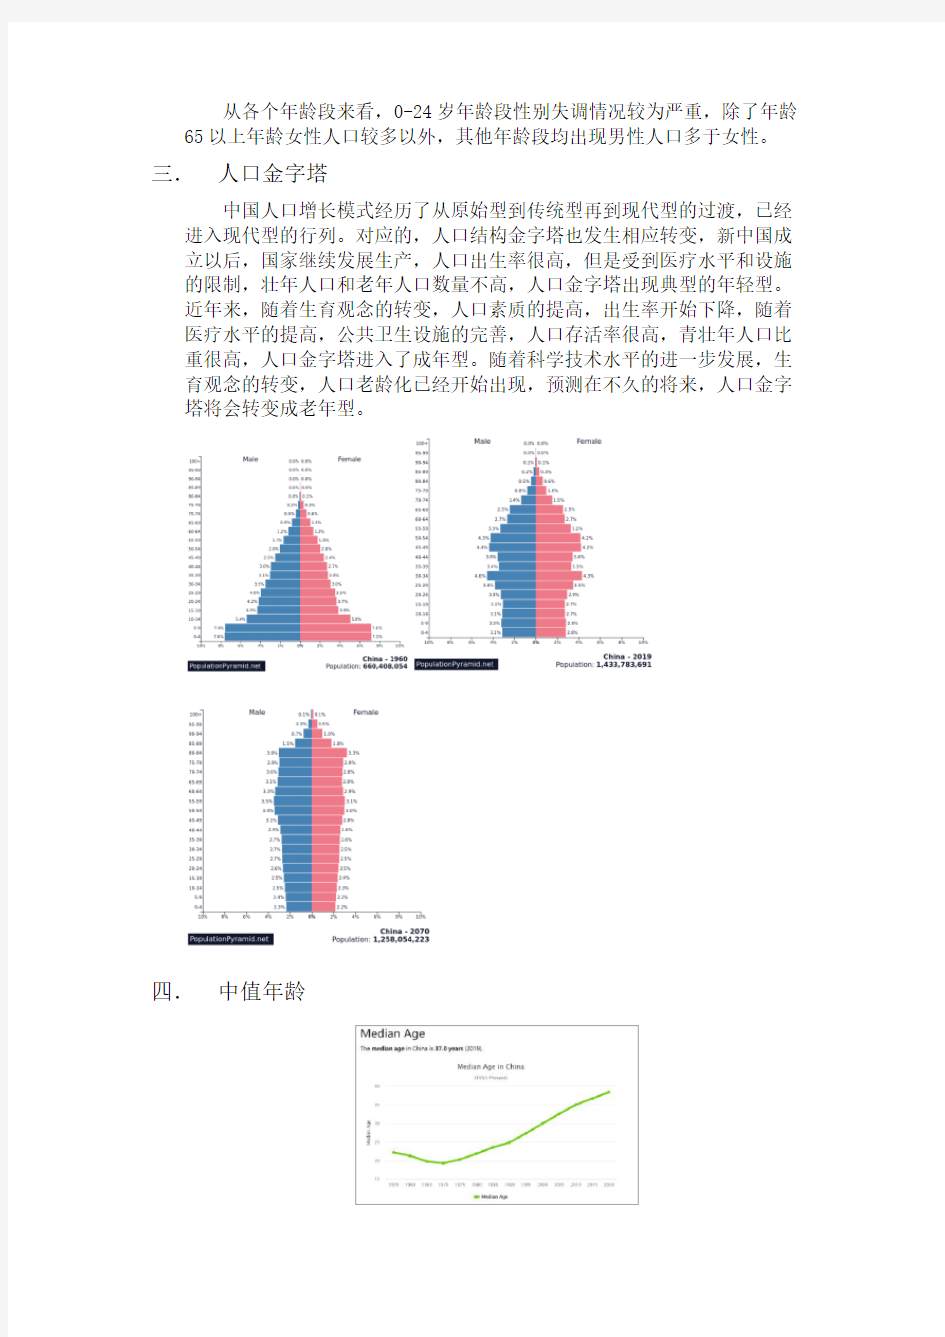 中国人口报告